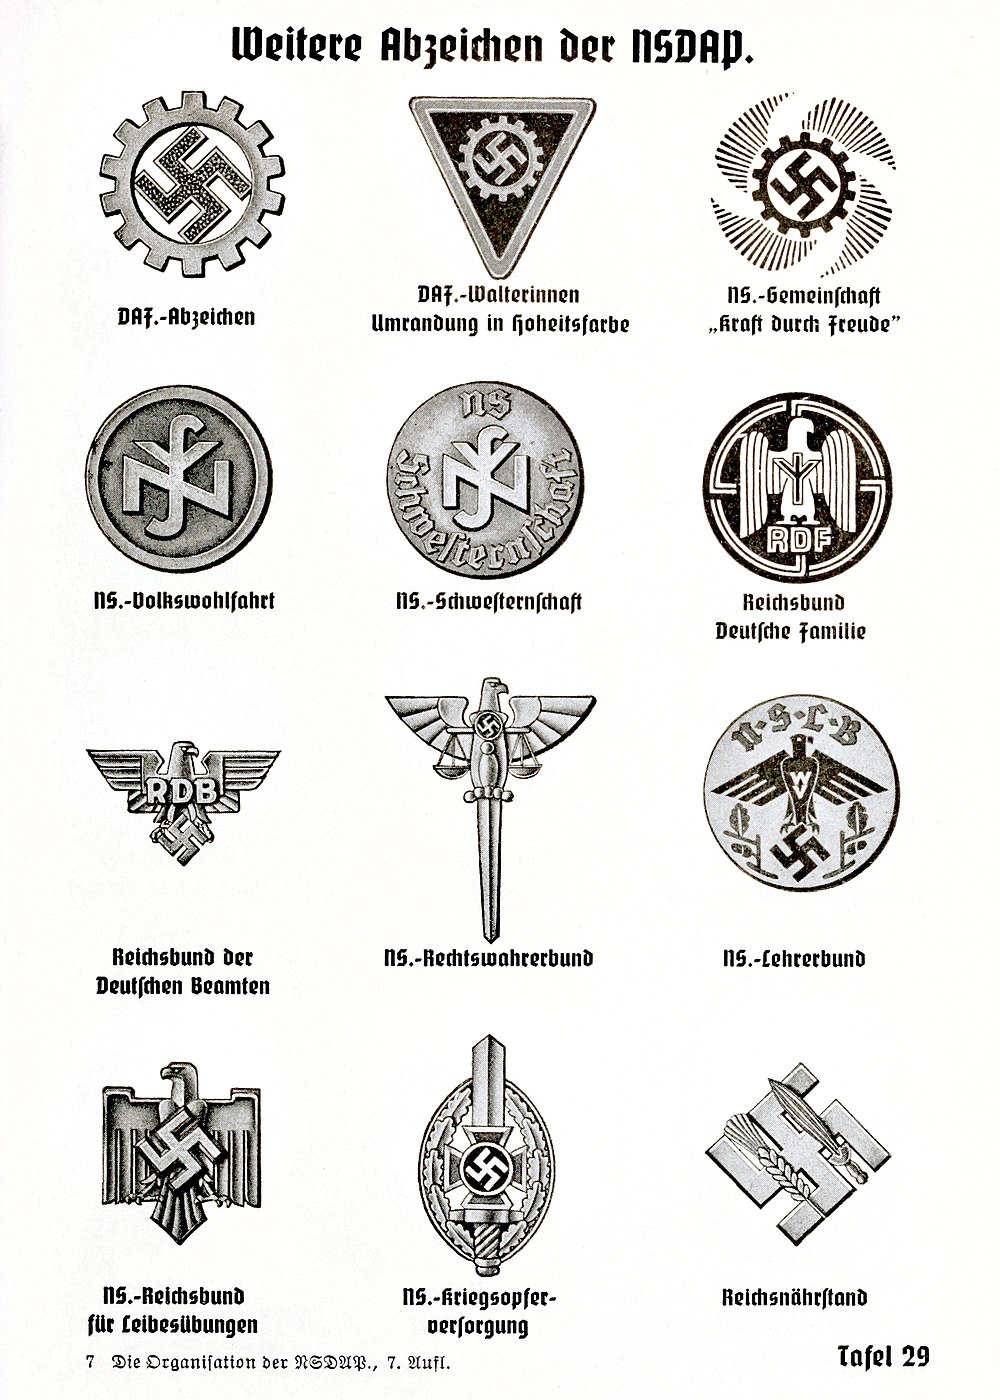 Emblem of the Reichsbund Deutsche Familie (RDF), from Organisationsbuch der NSDAP 1943